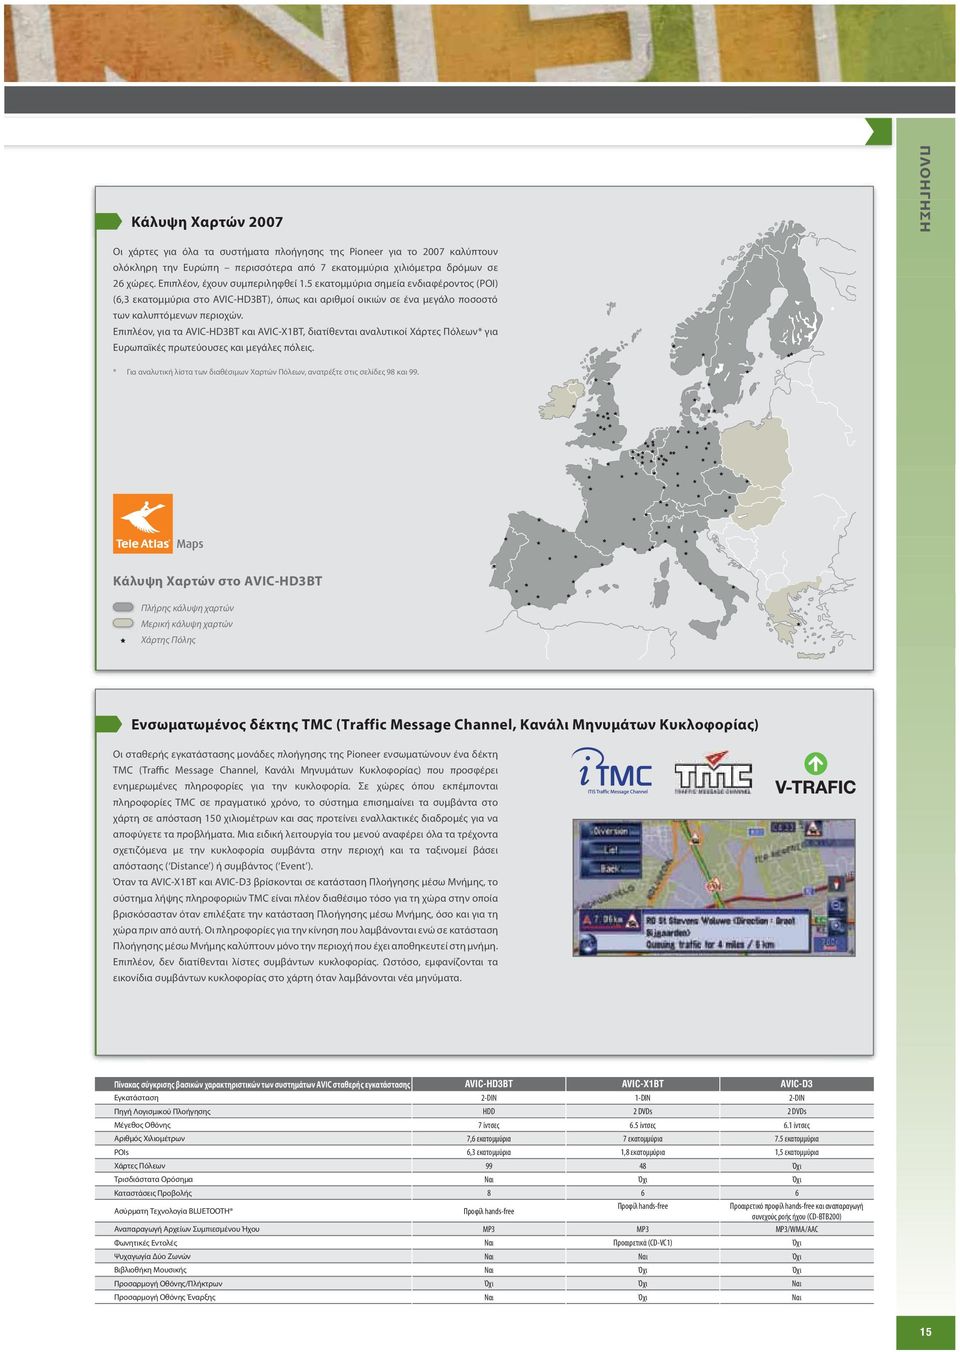 Επιπλέον, για τα AVIC-HD3BT και AVIC-X1BT, διατίθενται αναλυτικοί Χάρτες Πόλεων* για Ευρωπαϊκές πρωτεύουσες και μεγάλες πόλεις.